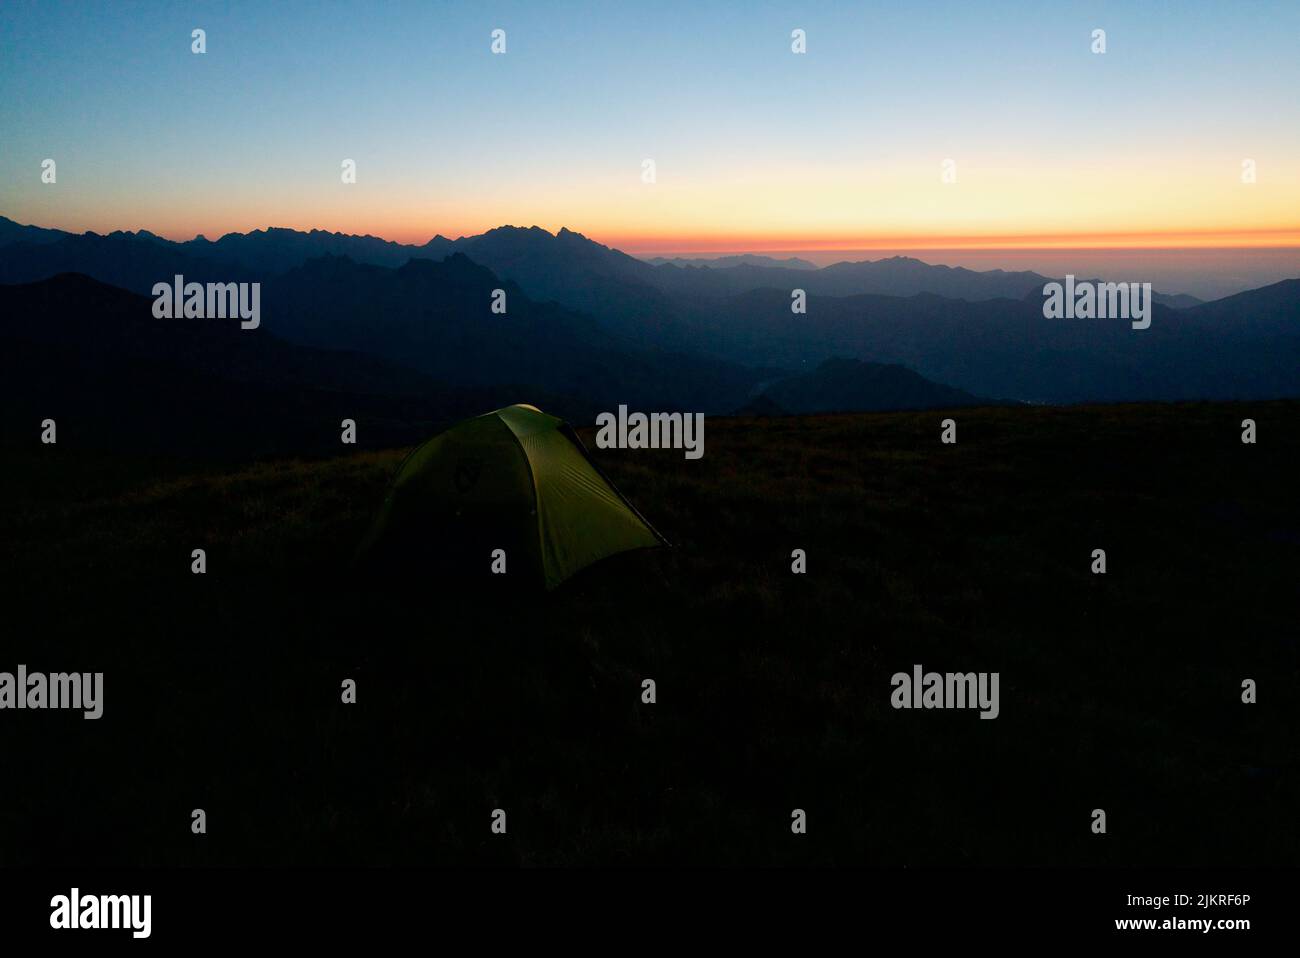 Tenda sulla cima di una montagna (Pic du Cabaliros) nel Parco Nazionale dei Pirenei. Alti Pirenei. Francia. Campeggio sulla cima di una montagna al tramonto. Bivacco. Foto Stock